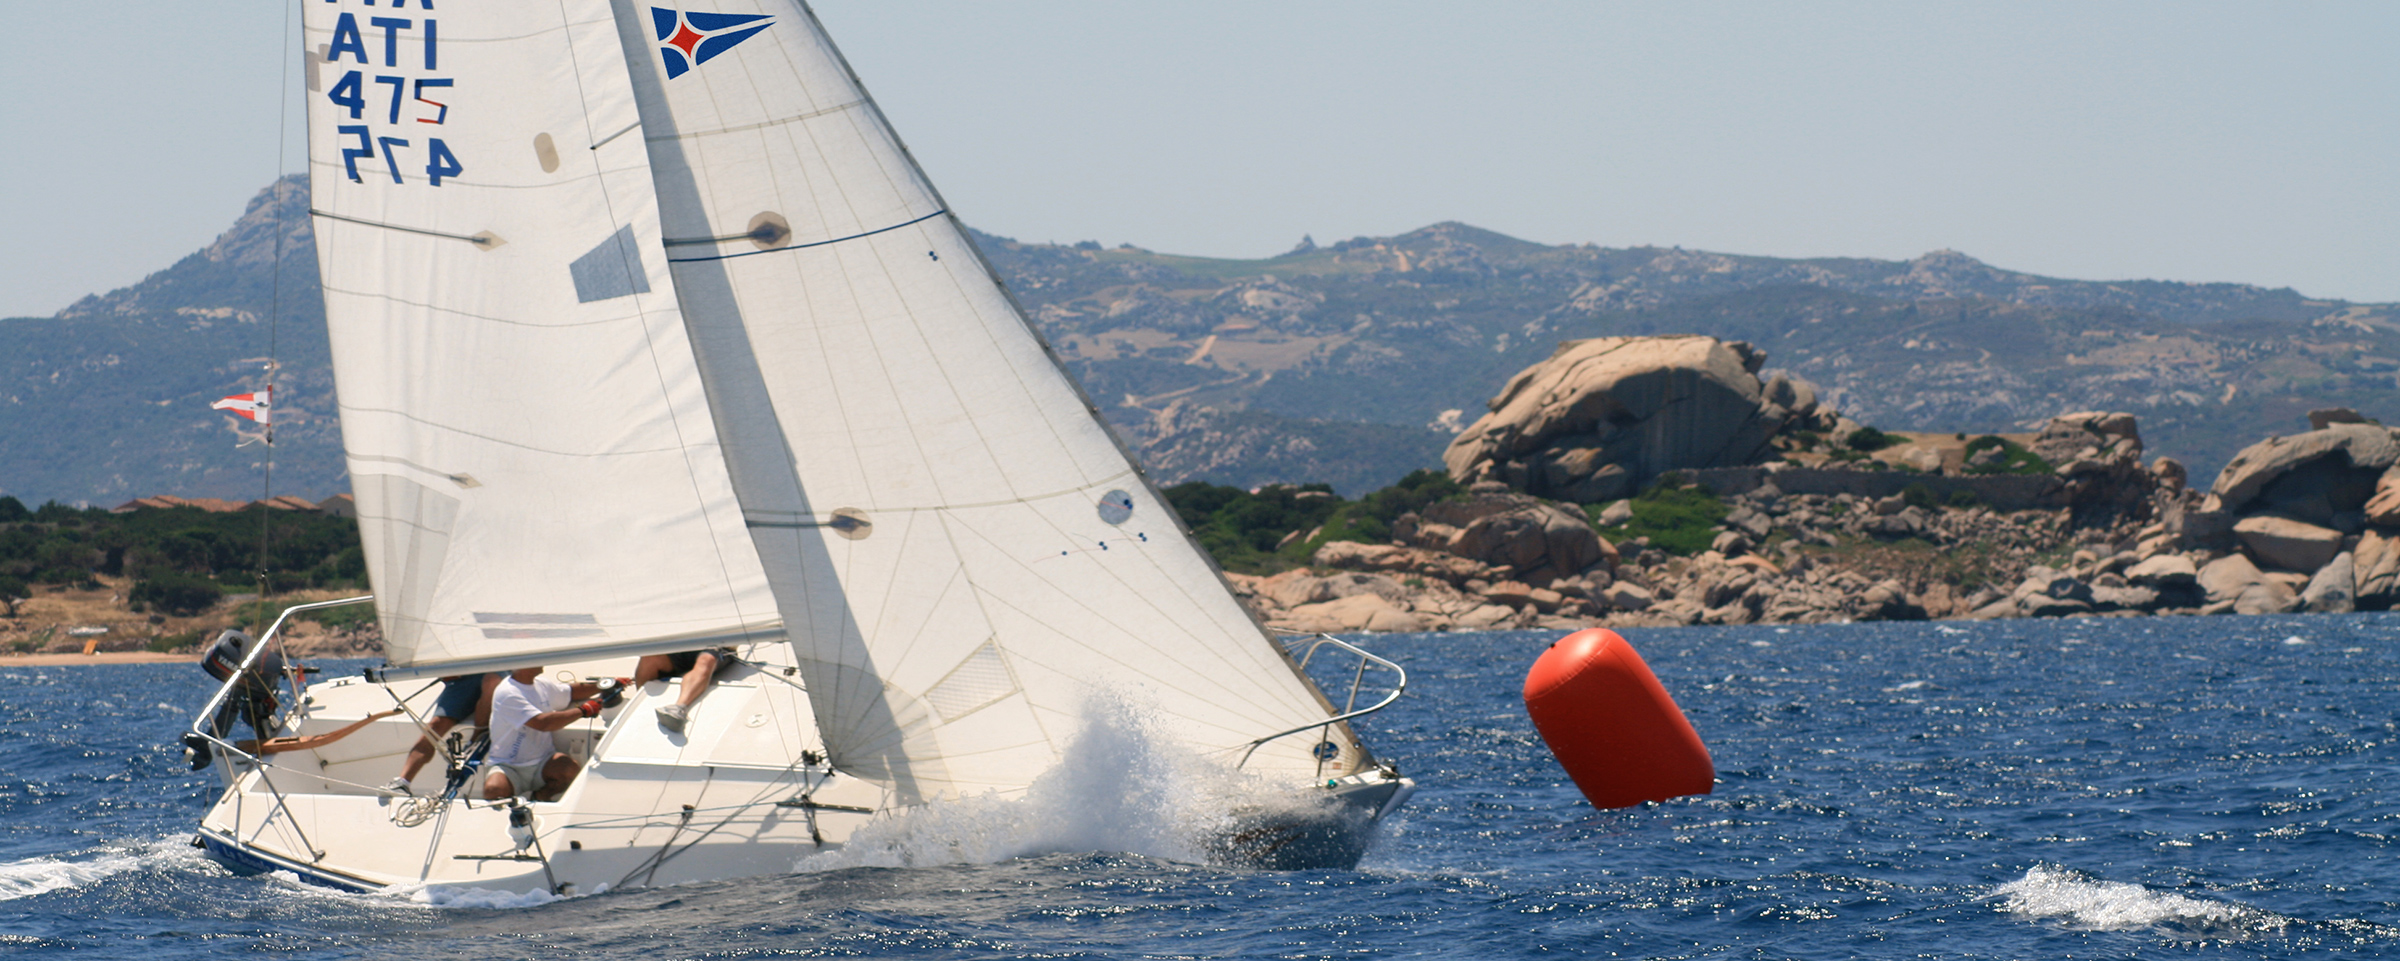 YCCS Sailing School - 2 - Yacht Club Costa Smeralda